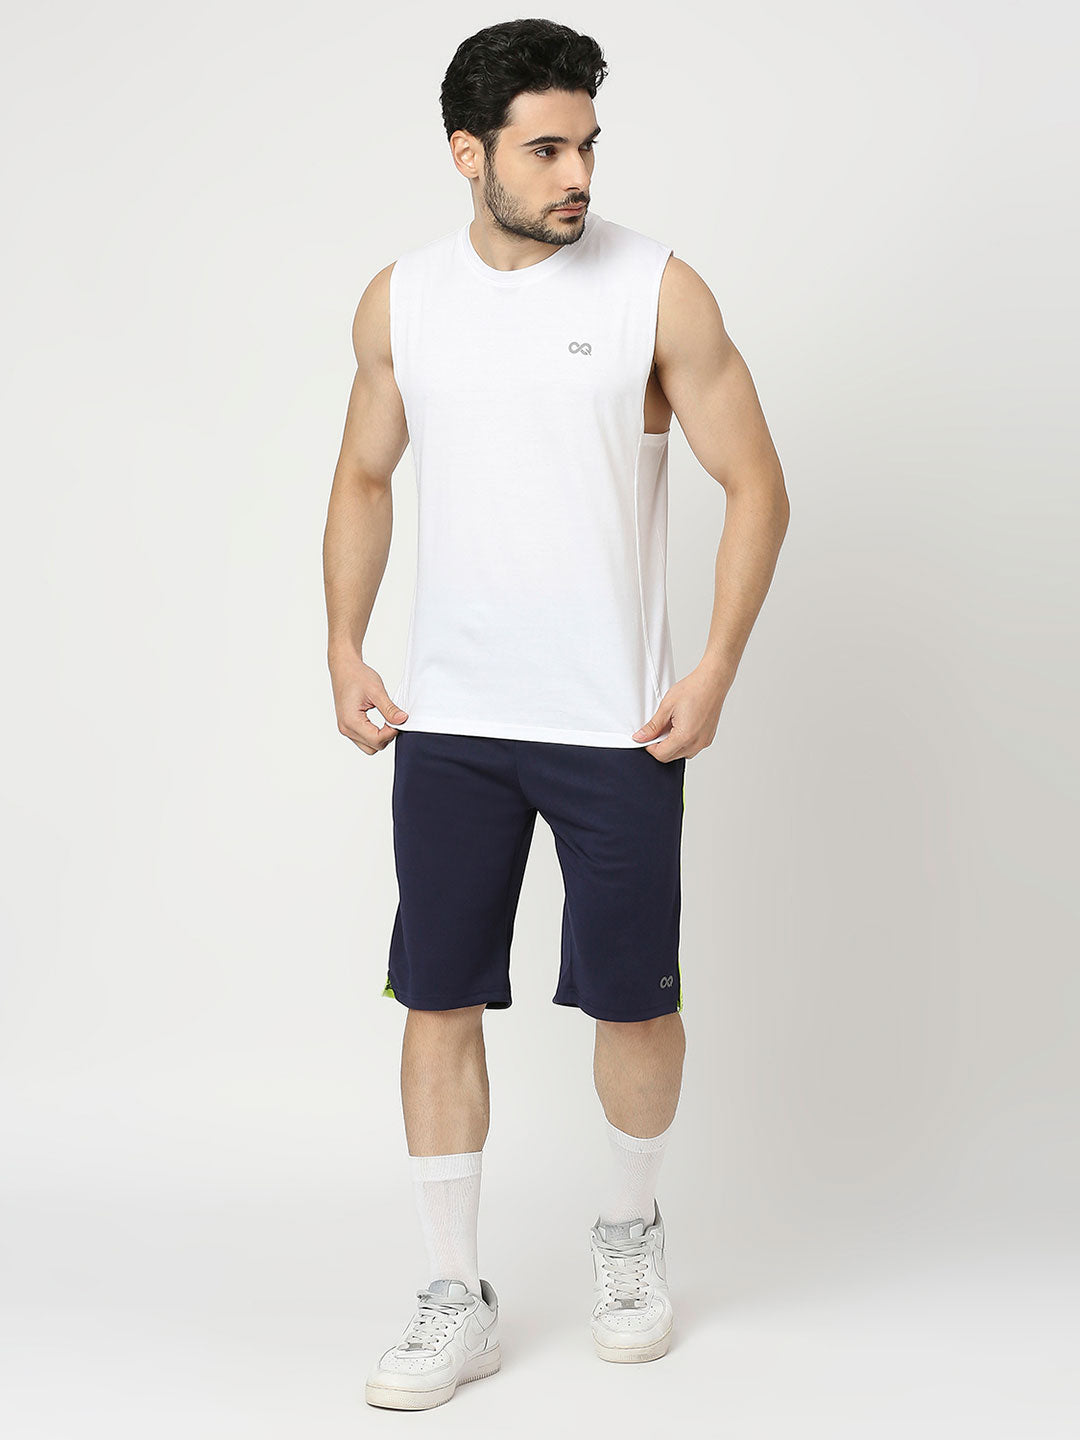 Men's Sports Vest - White